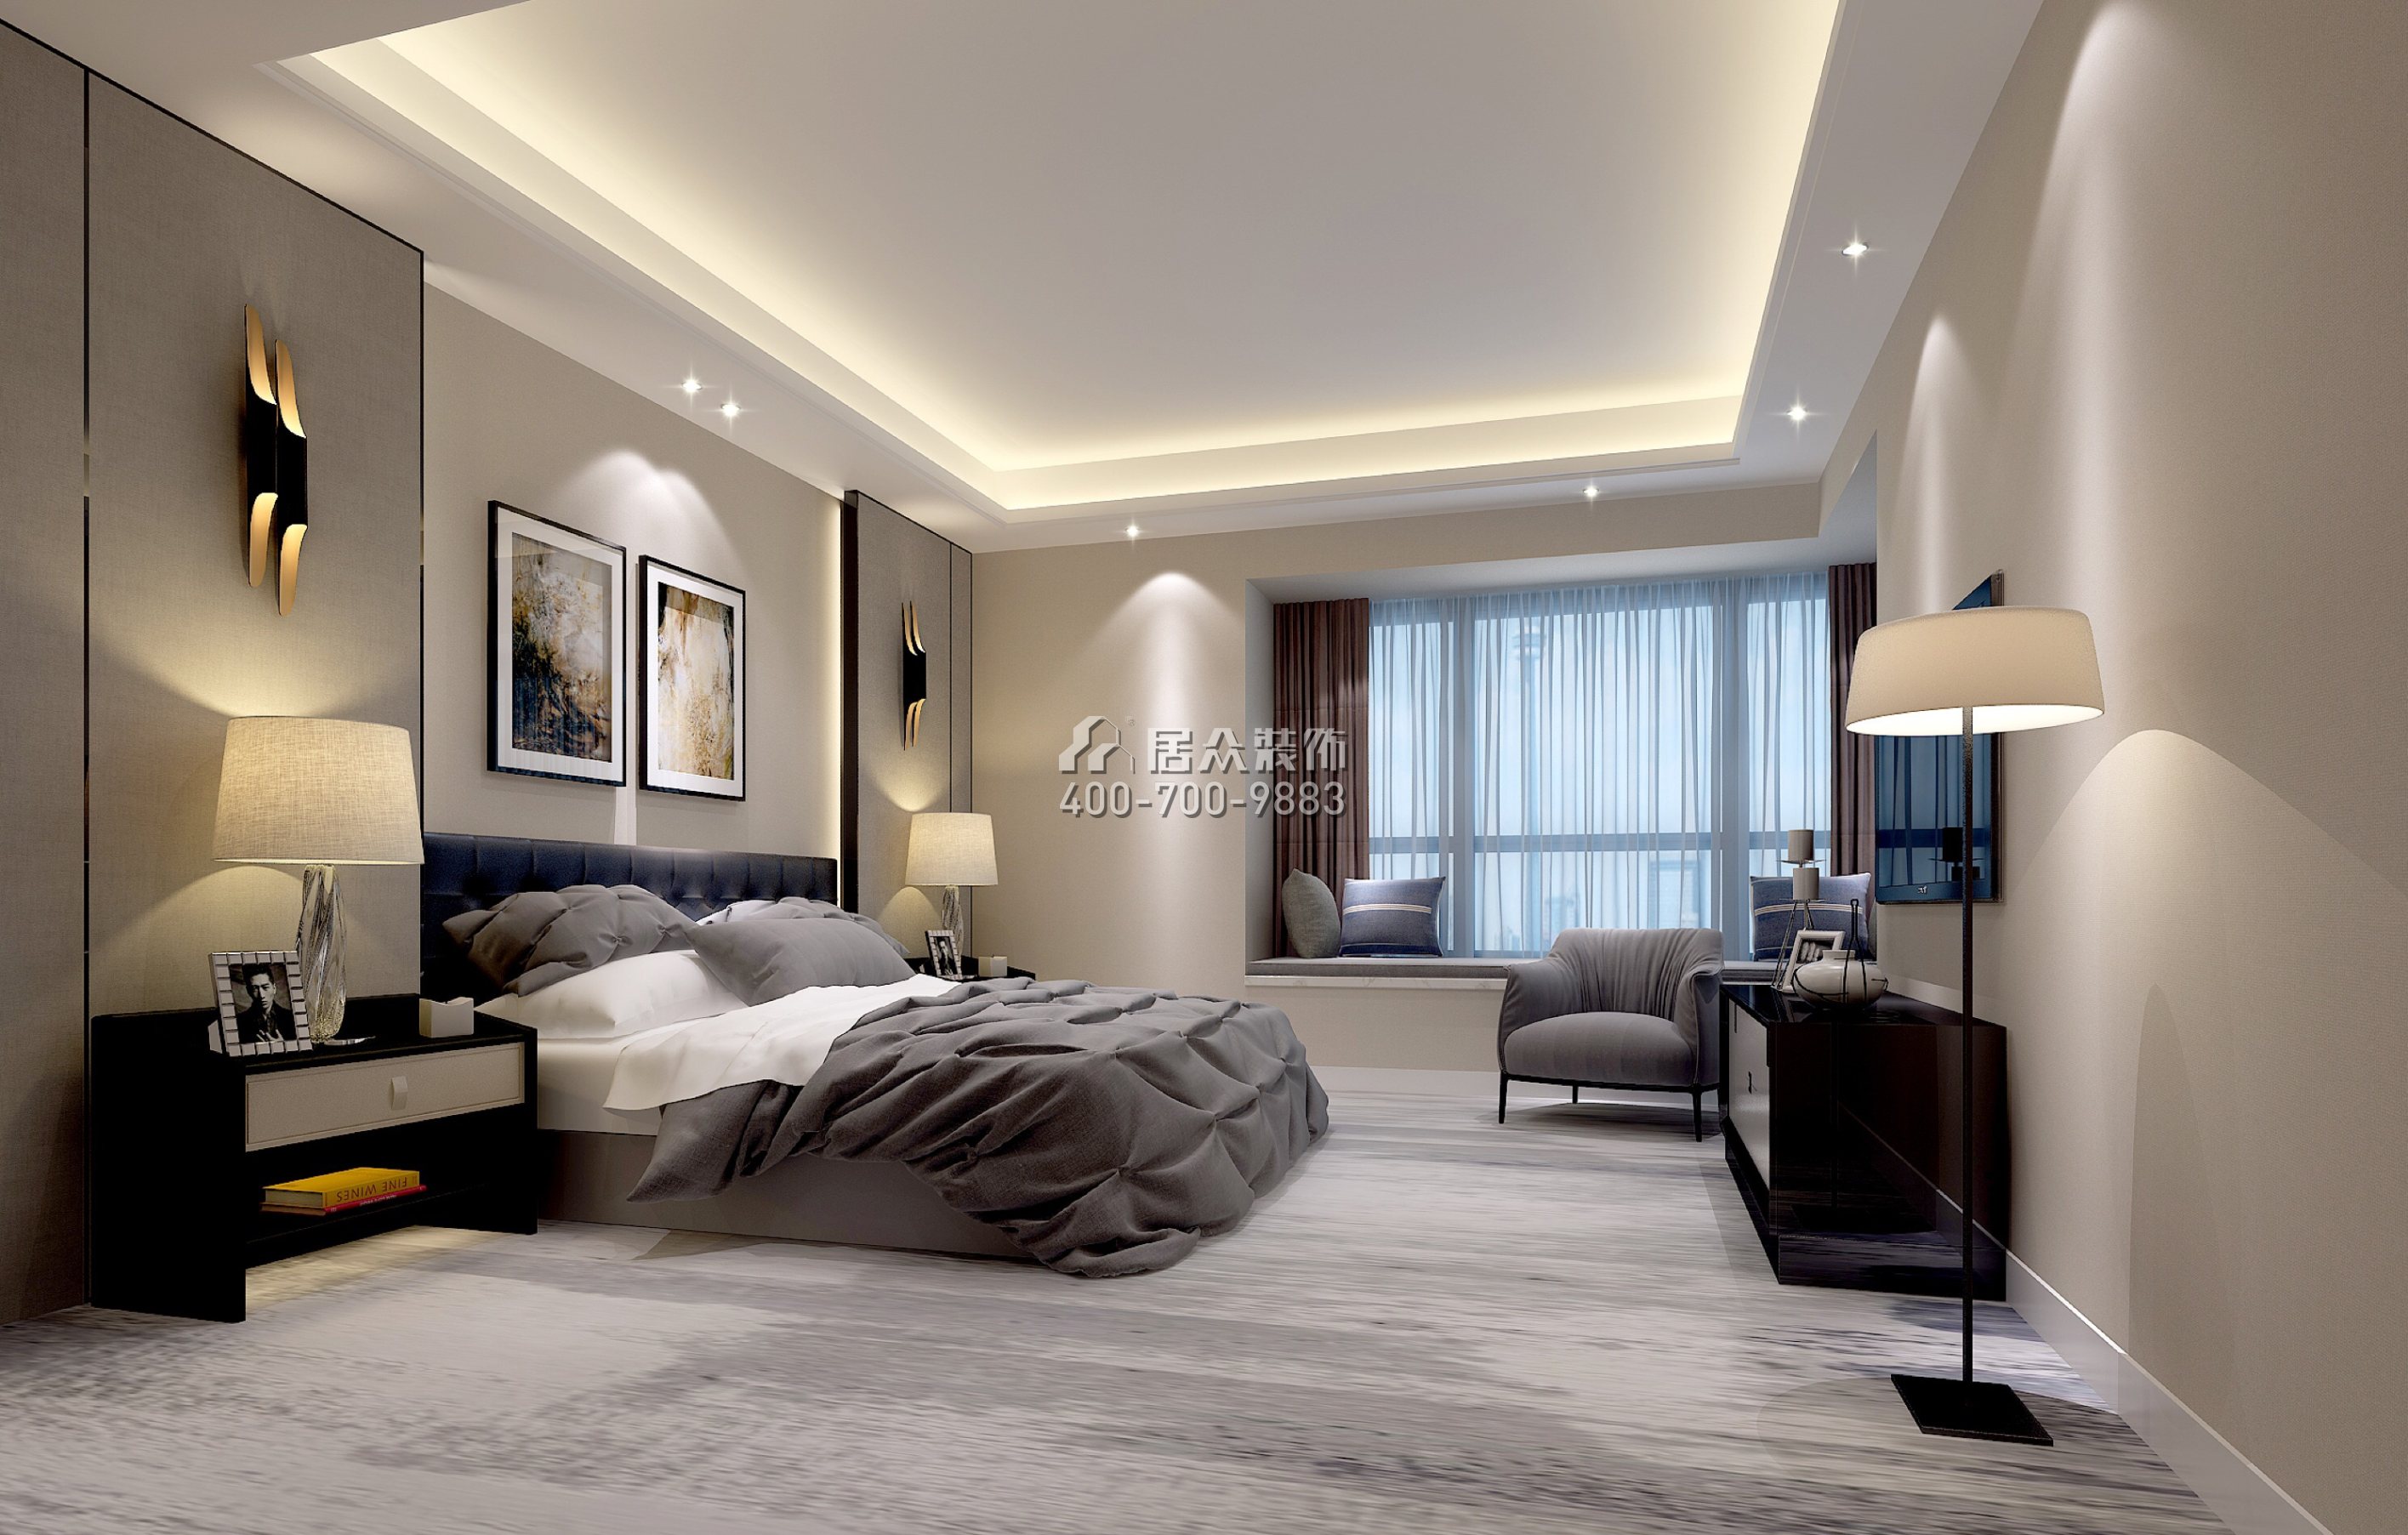 天譽190平方米現代簡約風格平層戶型臥室裝修效果圖